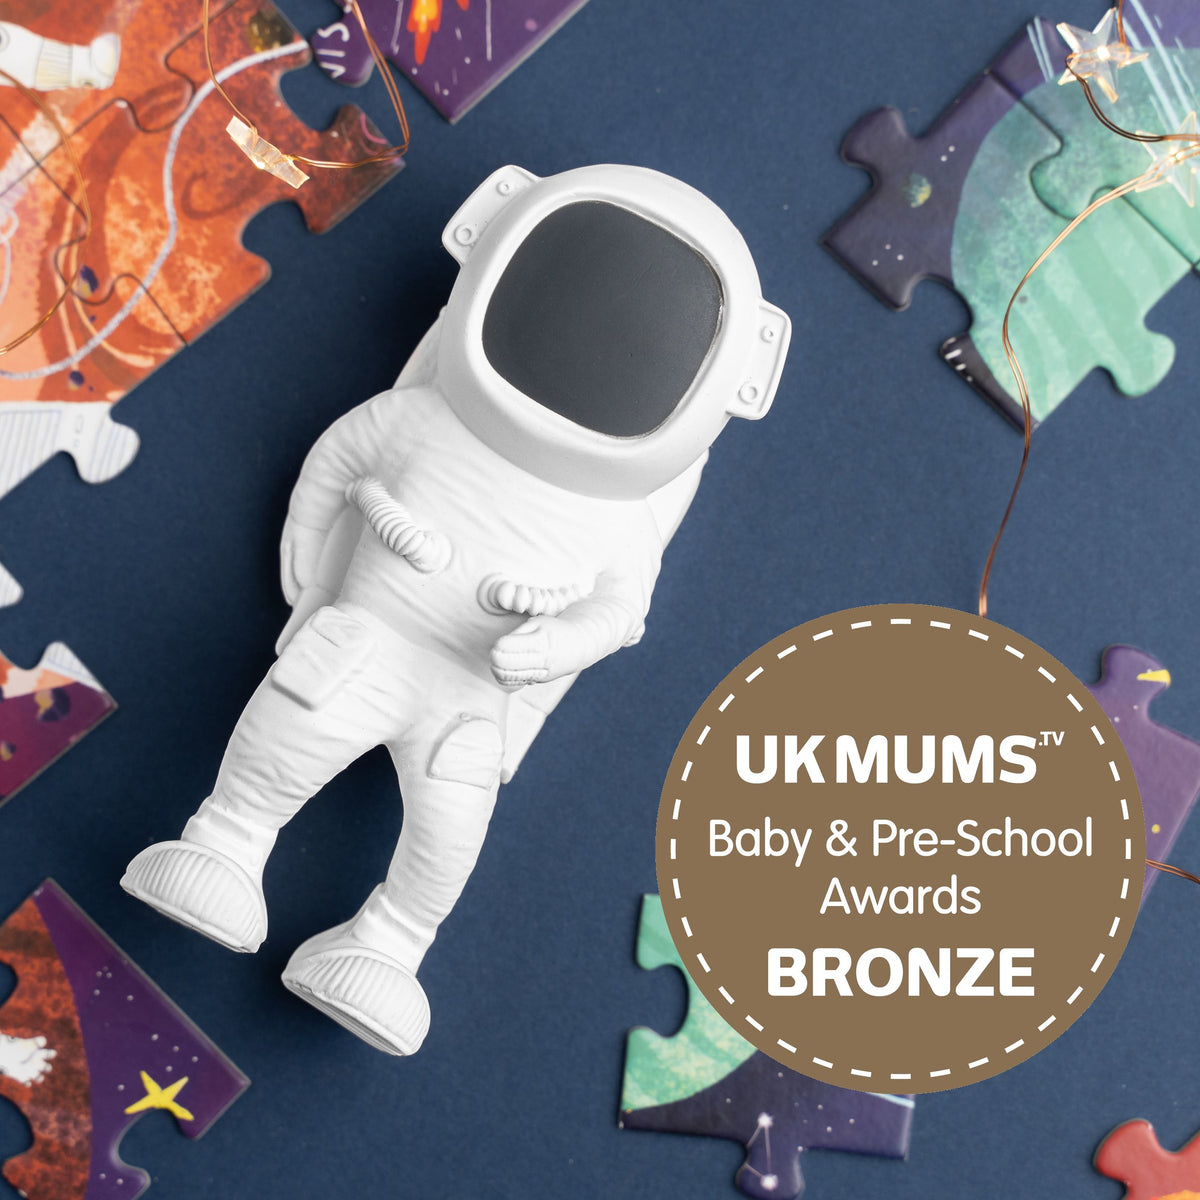 AstroGNAW® astronaut toy wins baby award